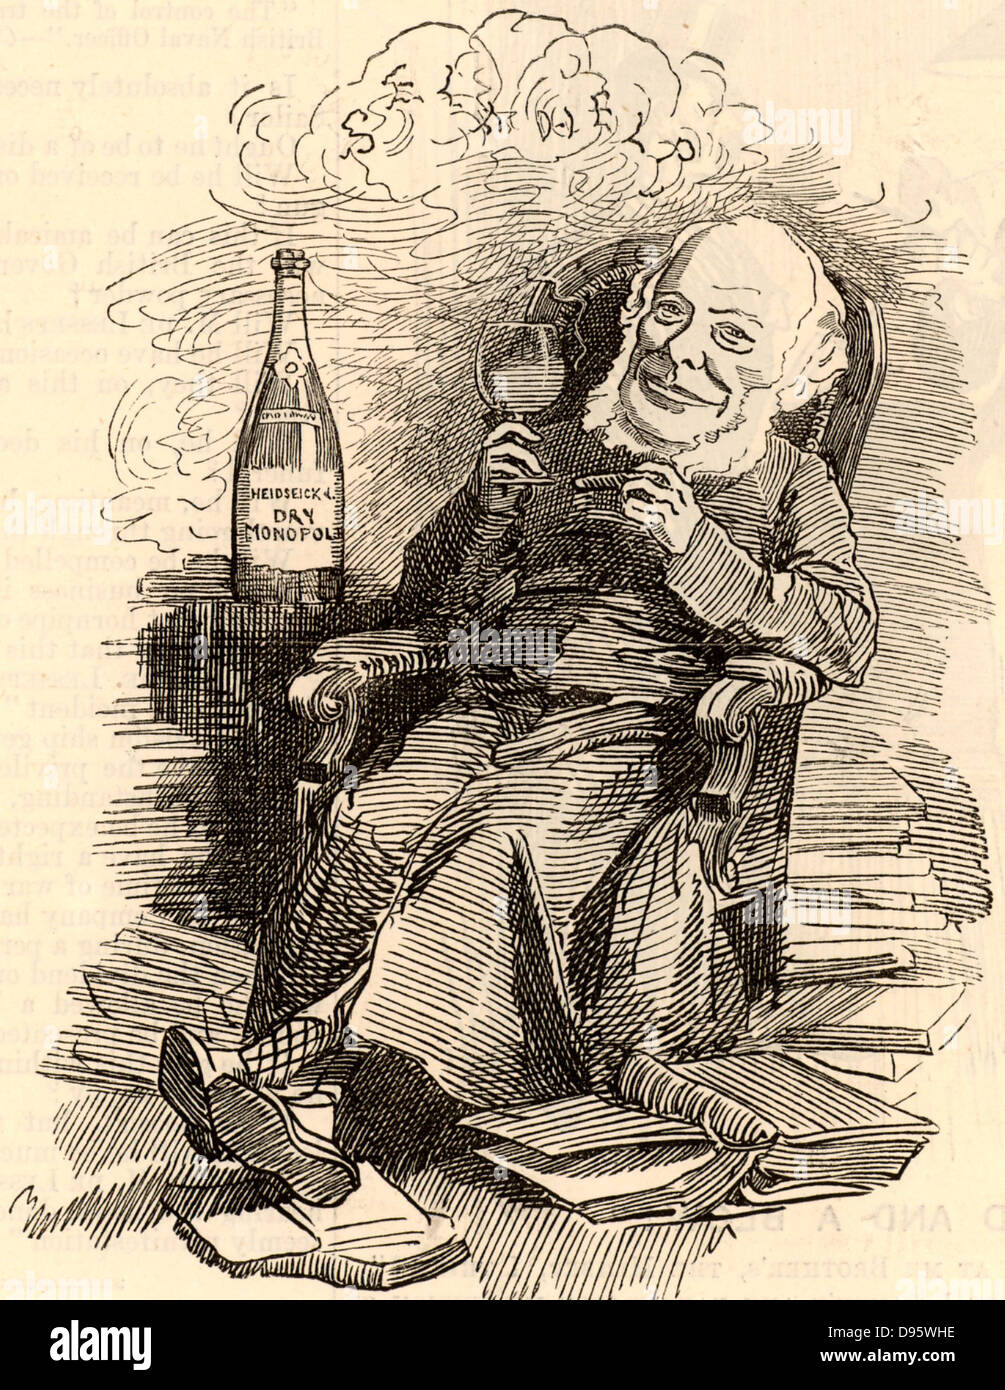 Samuel Smiles (1812-1904) schottischer Autor und Mitkämpfer für politische Reformen, geboren in Haddington. Er studierte Medizin an der Universität Edinburgh. Herausgeber der "Leeds Zeiten" (1838-1845). Thema der 'Selbst-Hilfe' (1859) und von Biographien, insbesondere von Ingenieuren. Cartoon von Edward Linley Sambourne in der Punch Fancy Porträts aus der Serie 'Lochen' (London, 21. Juli 1883). Stockfoto